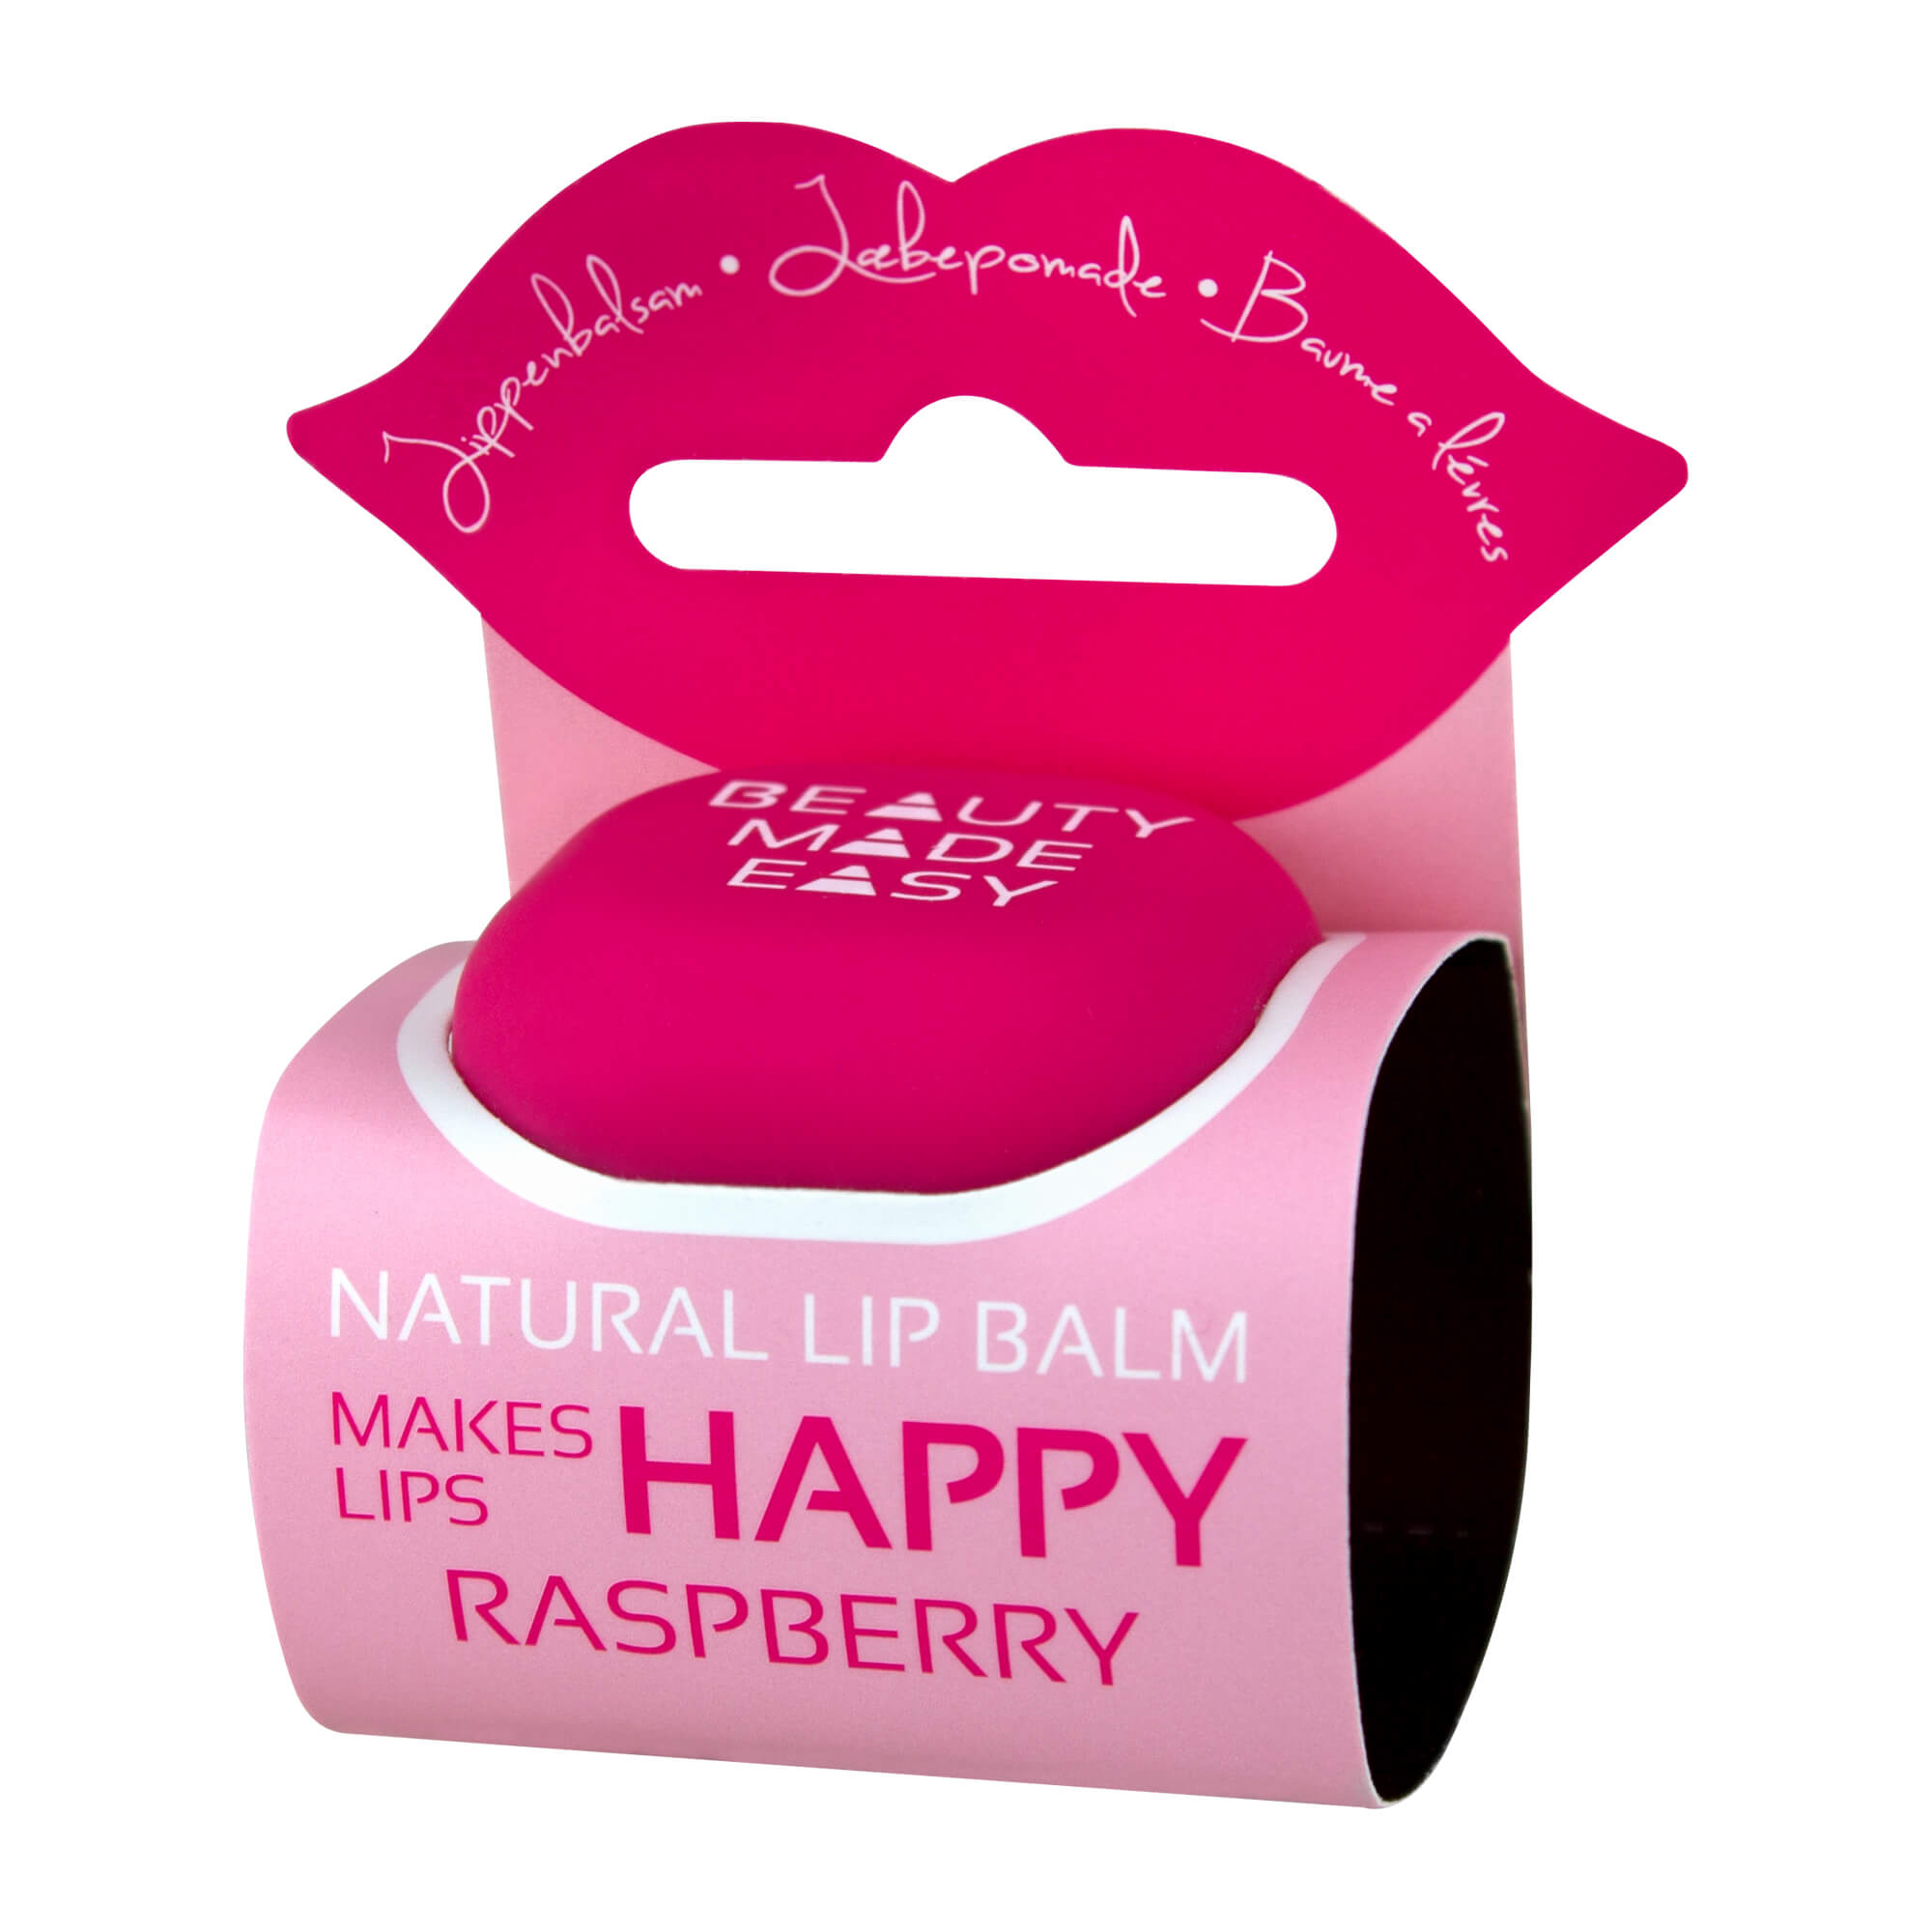 Natürliche Lippenpflege mit Vitaminen und Mineralien aus Himbeersamenöl.